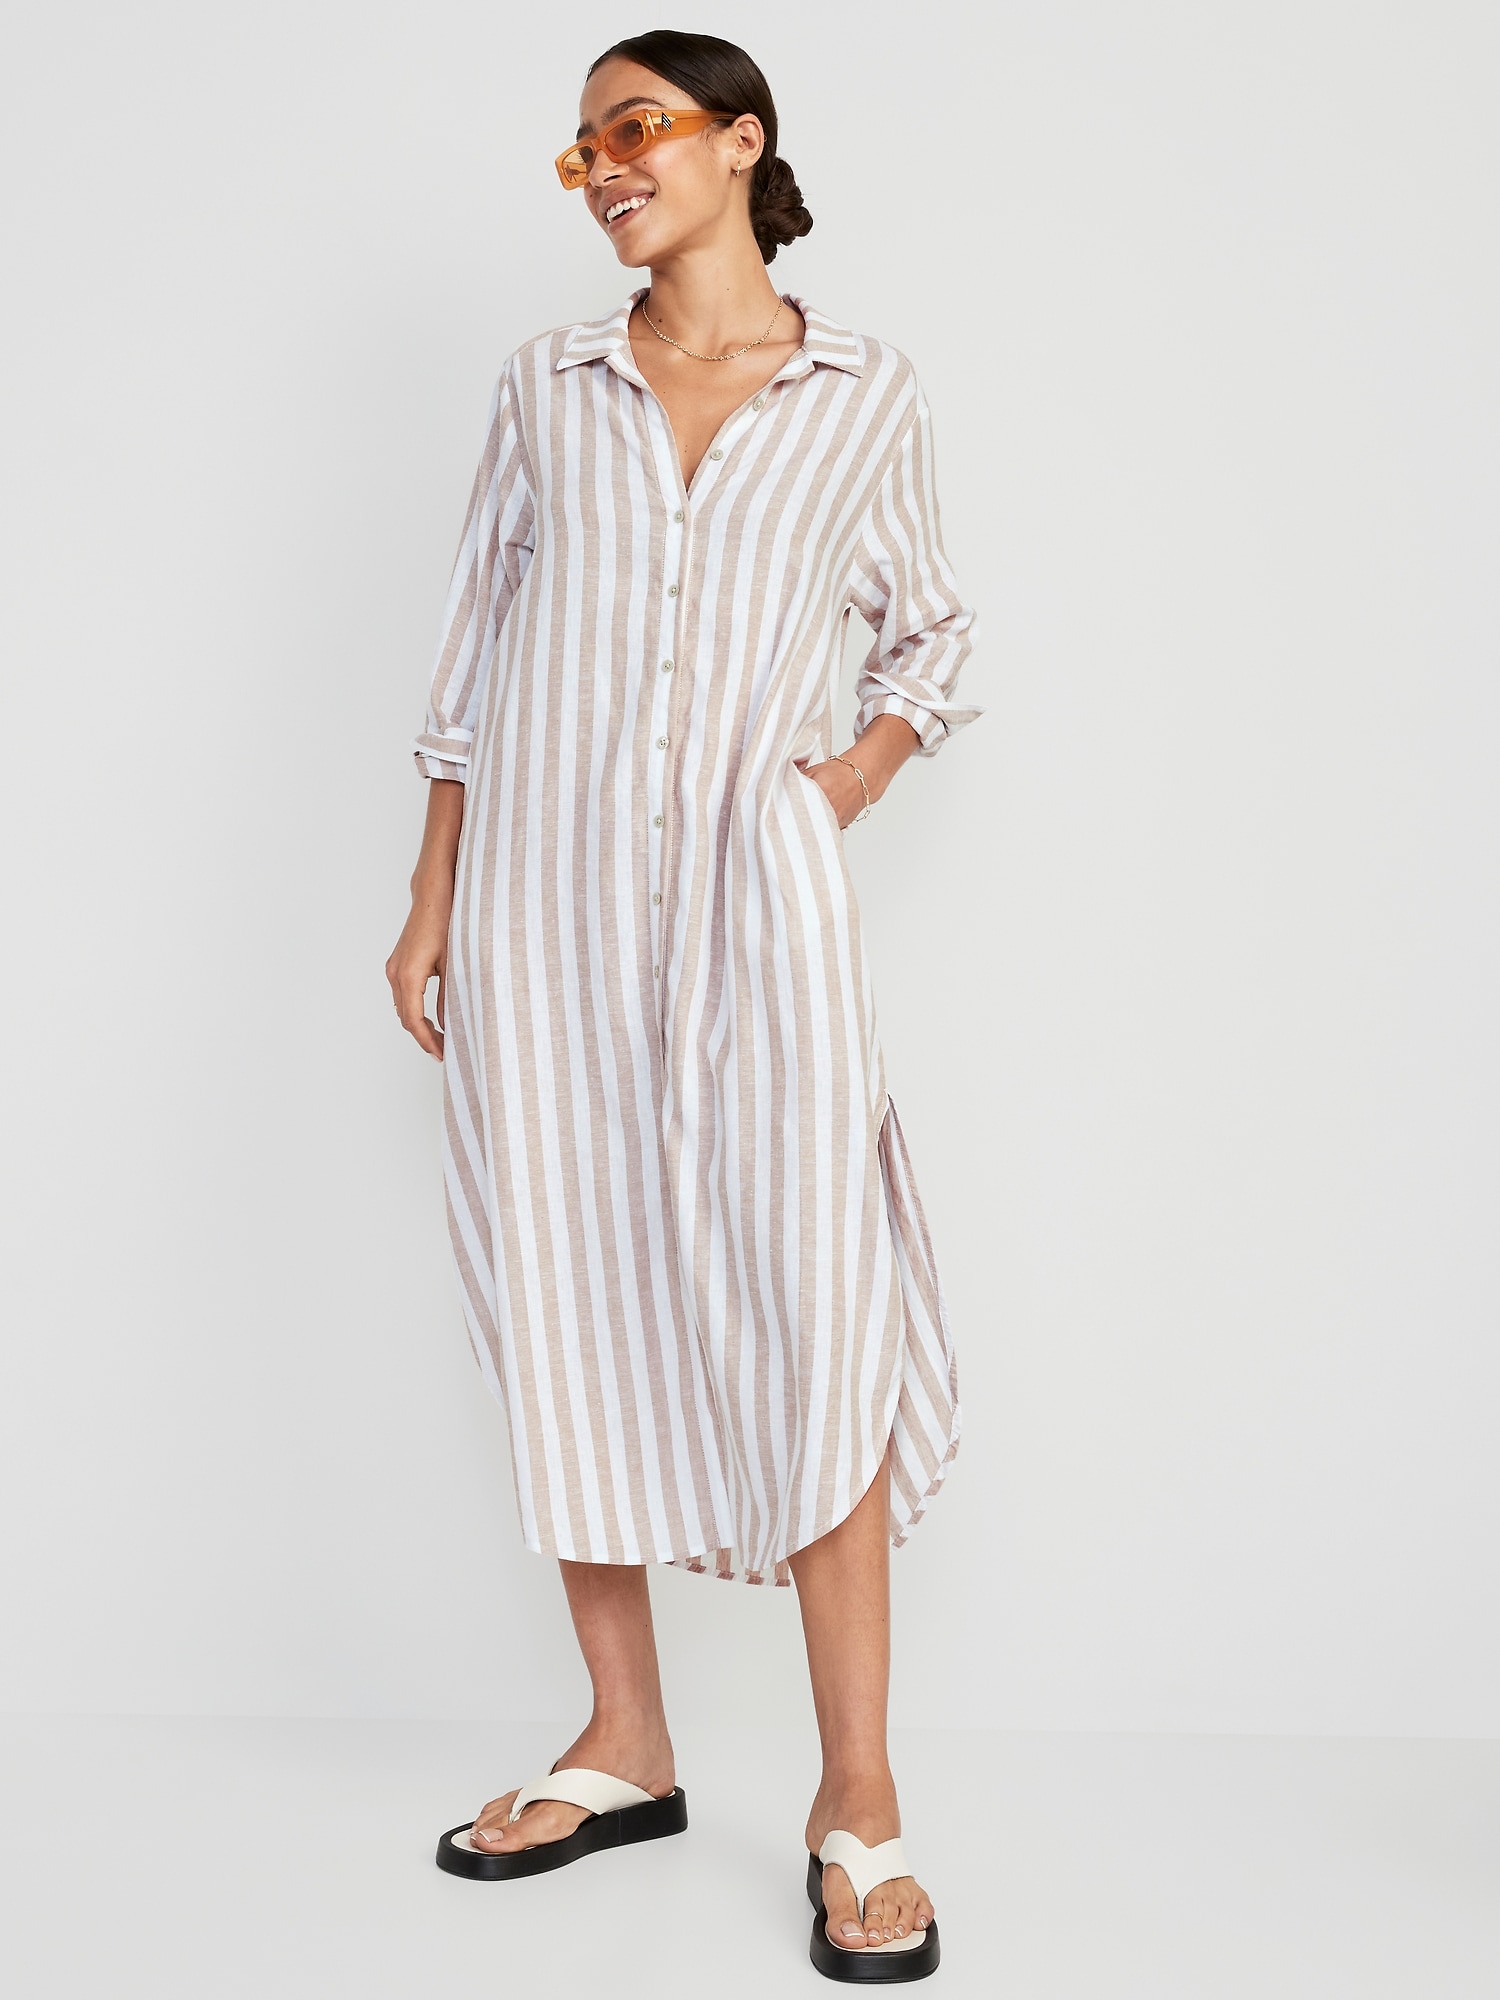 Long-Sleeve Linen-Blend Shirt Dress for Women | Old Navy